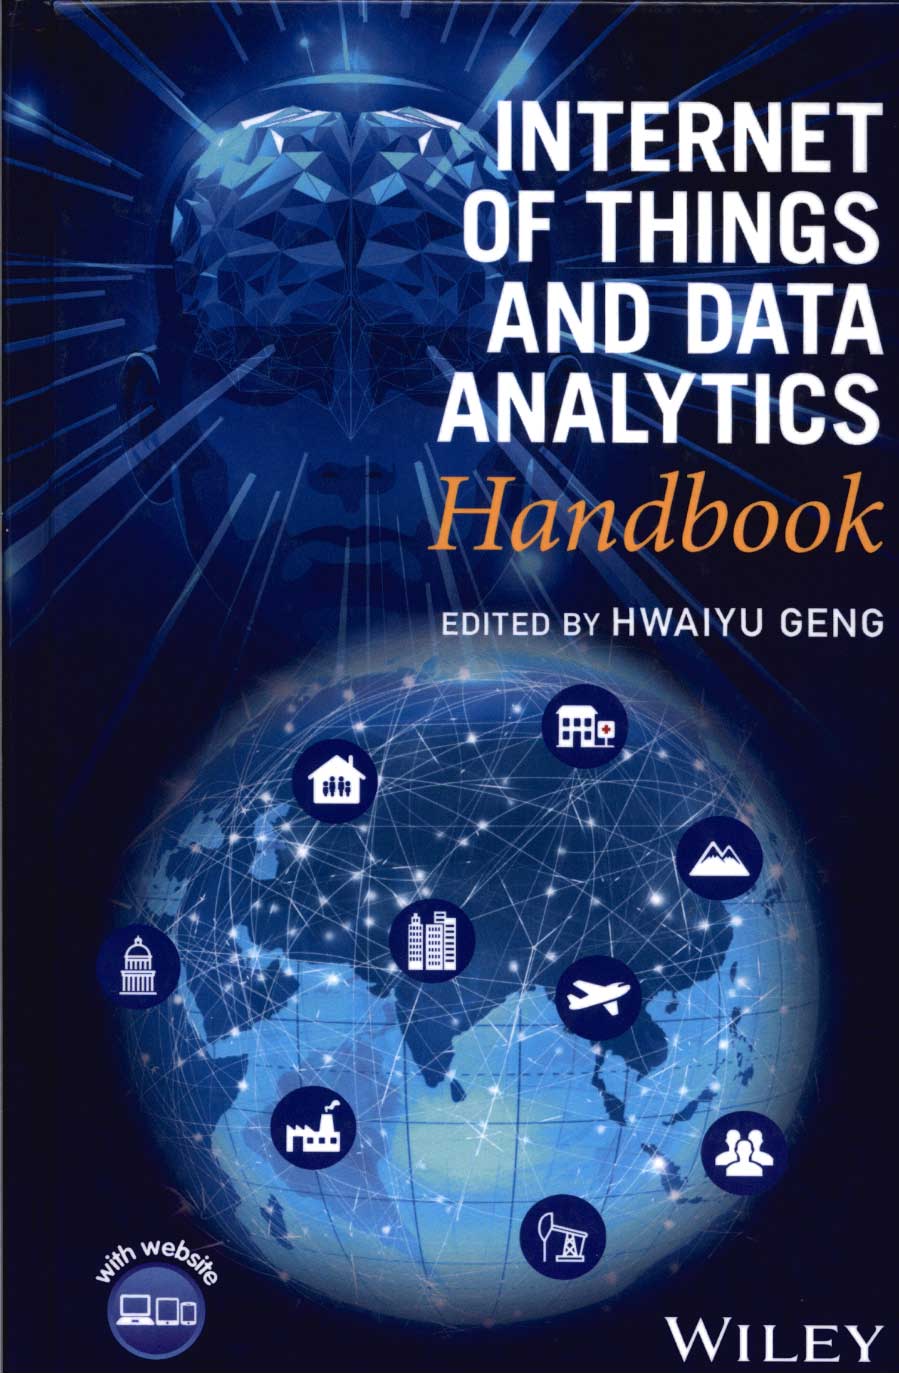 Internet of Things and data analytics handbook